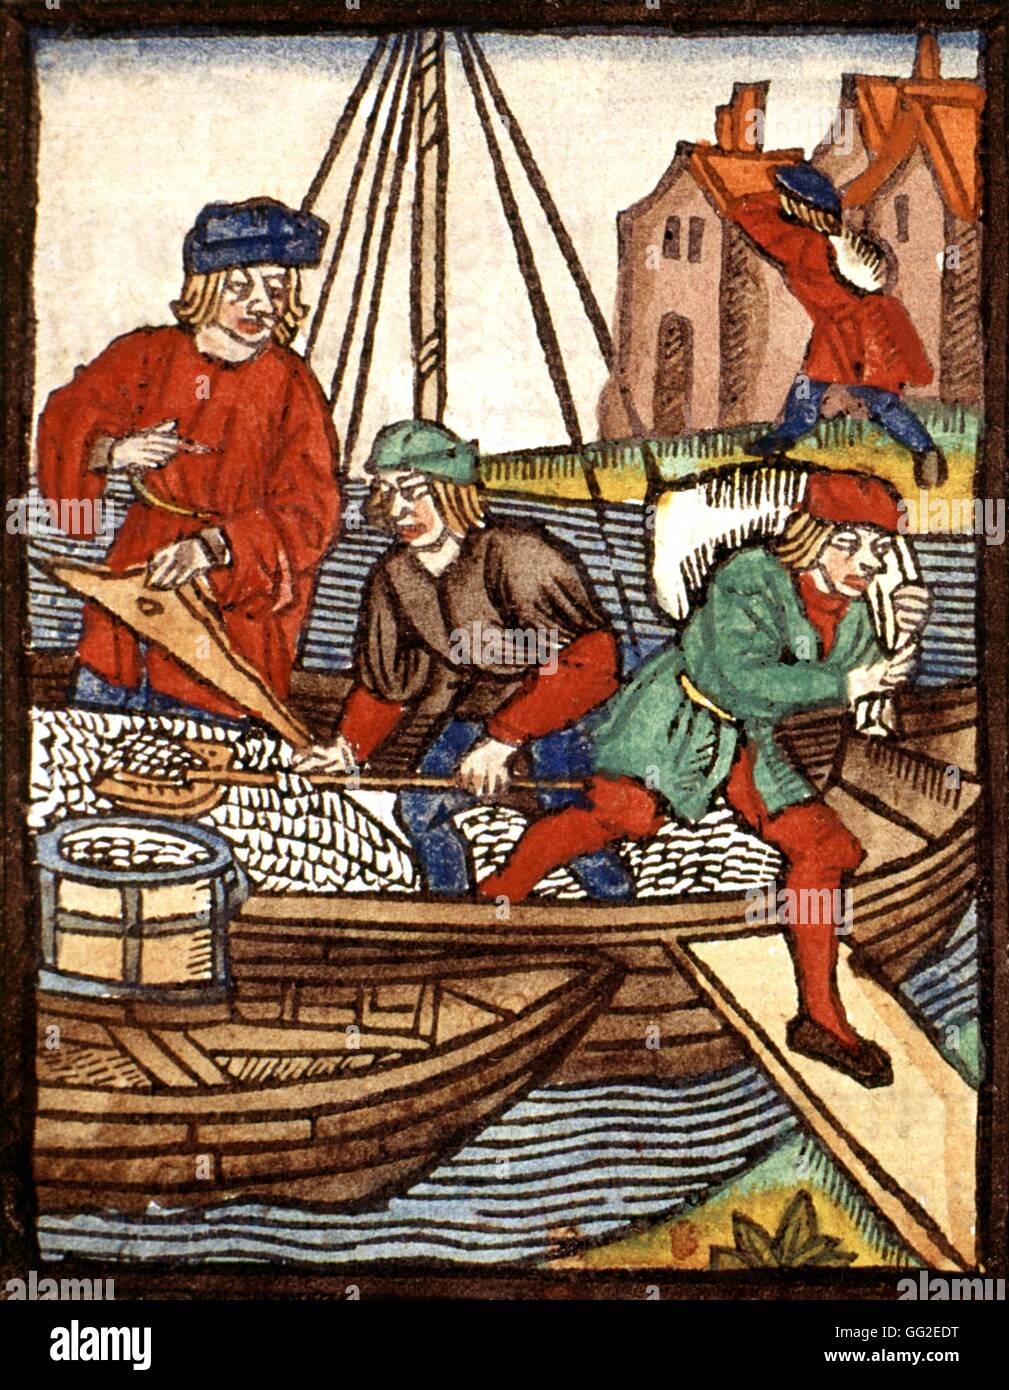 Royal decree of the Paris merchants provostship. Men unloading salt 1500 France Paris, Bibliothèque de l'arsenal Stock Photo